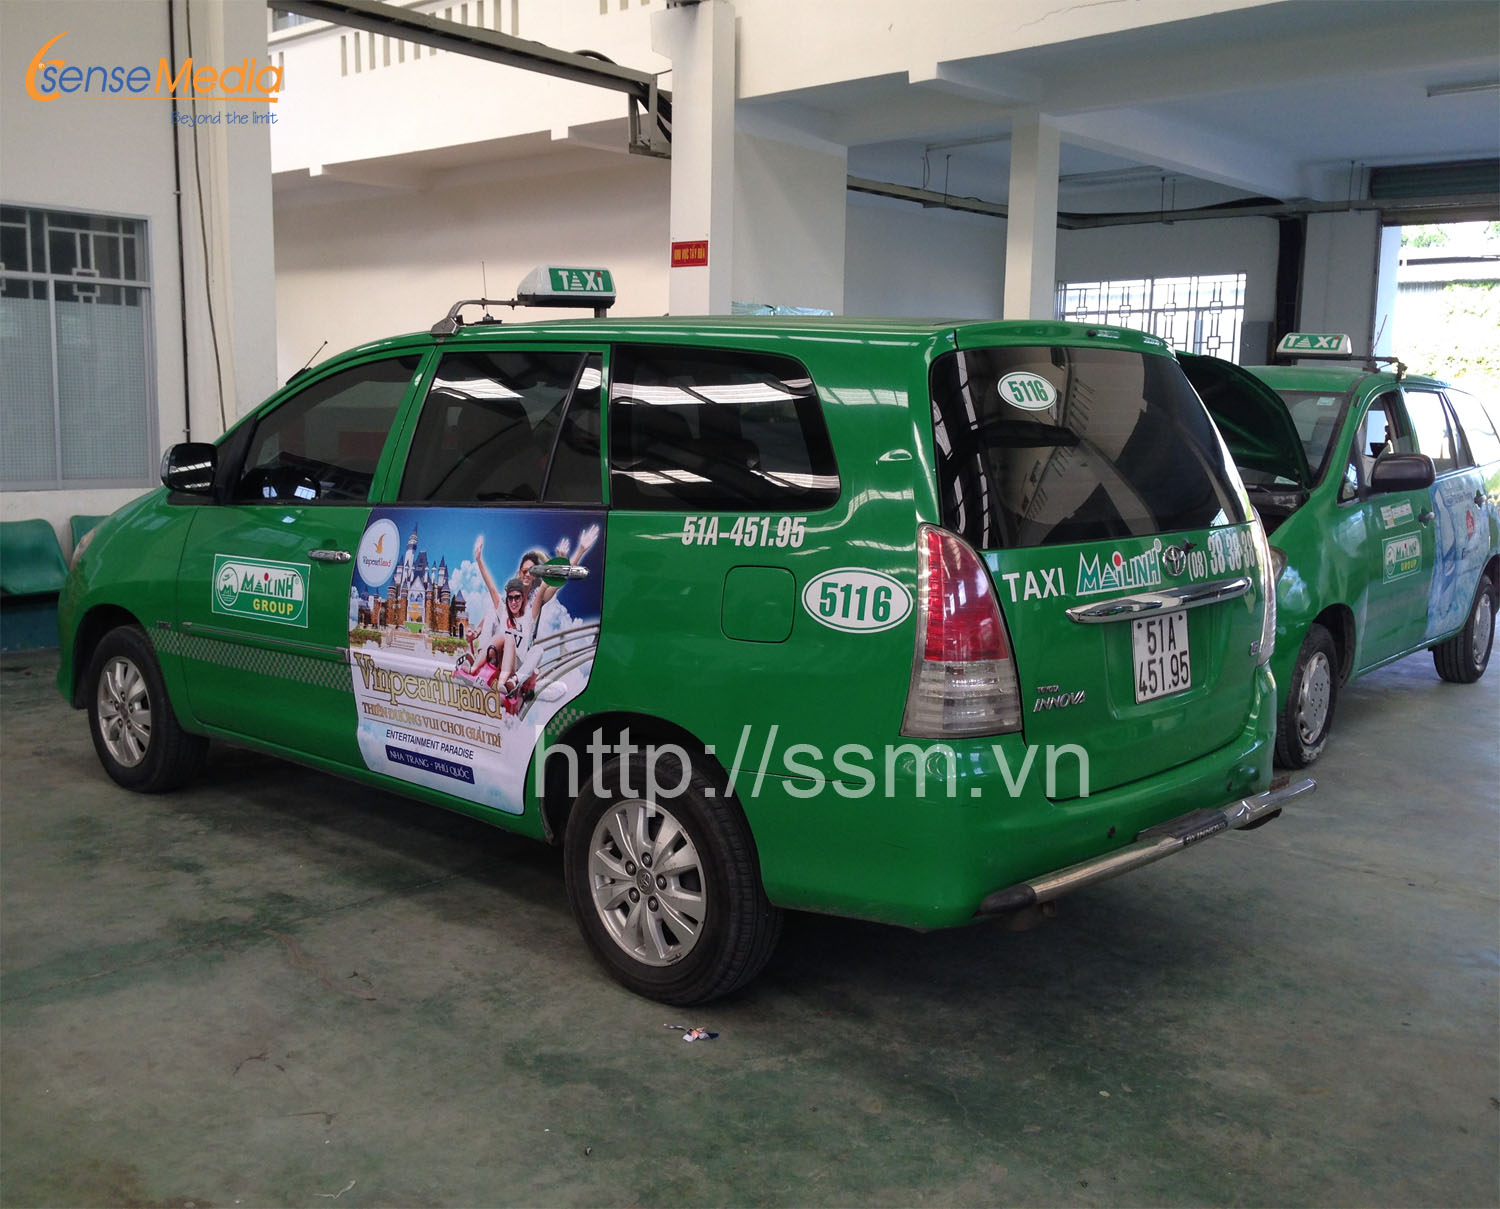 quảng cáo trên xe taxi Mai Linh toàn quốc uy tín